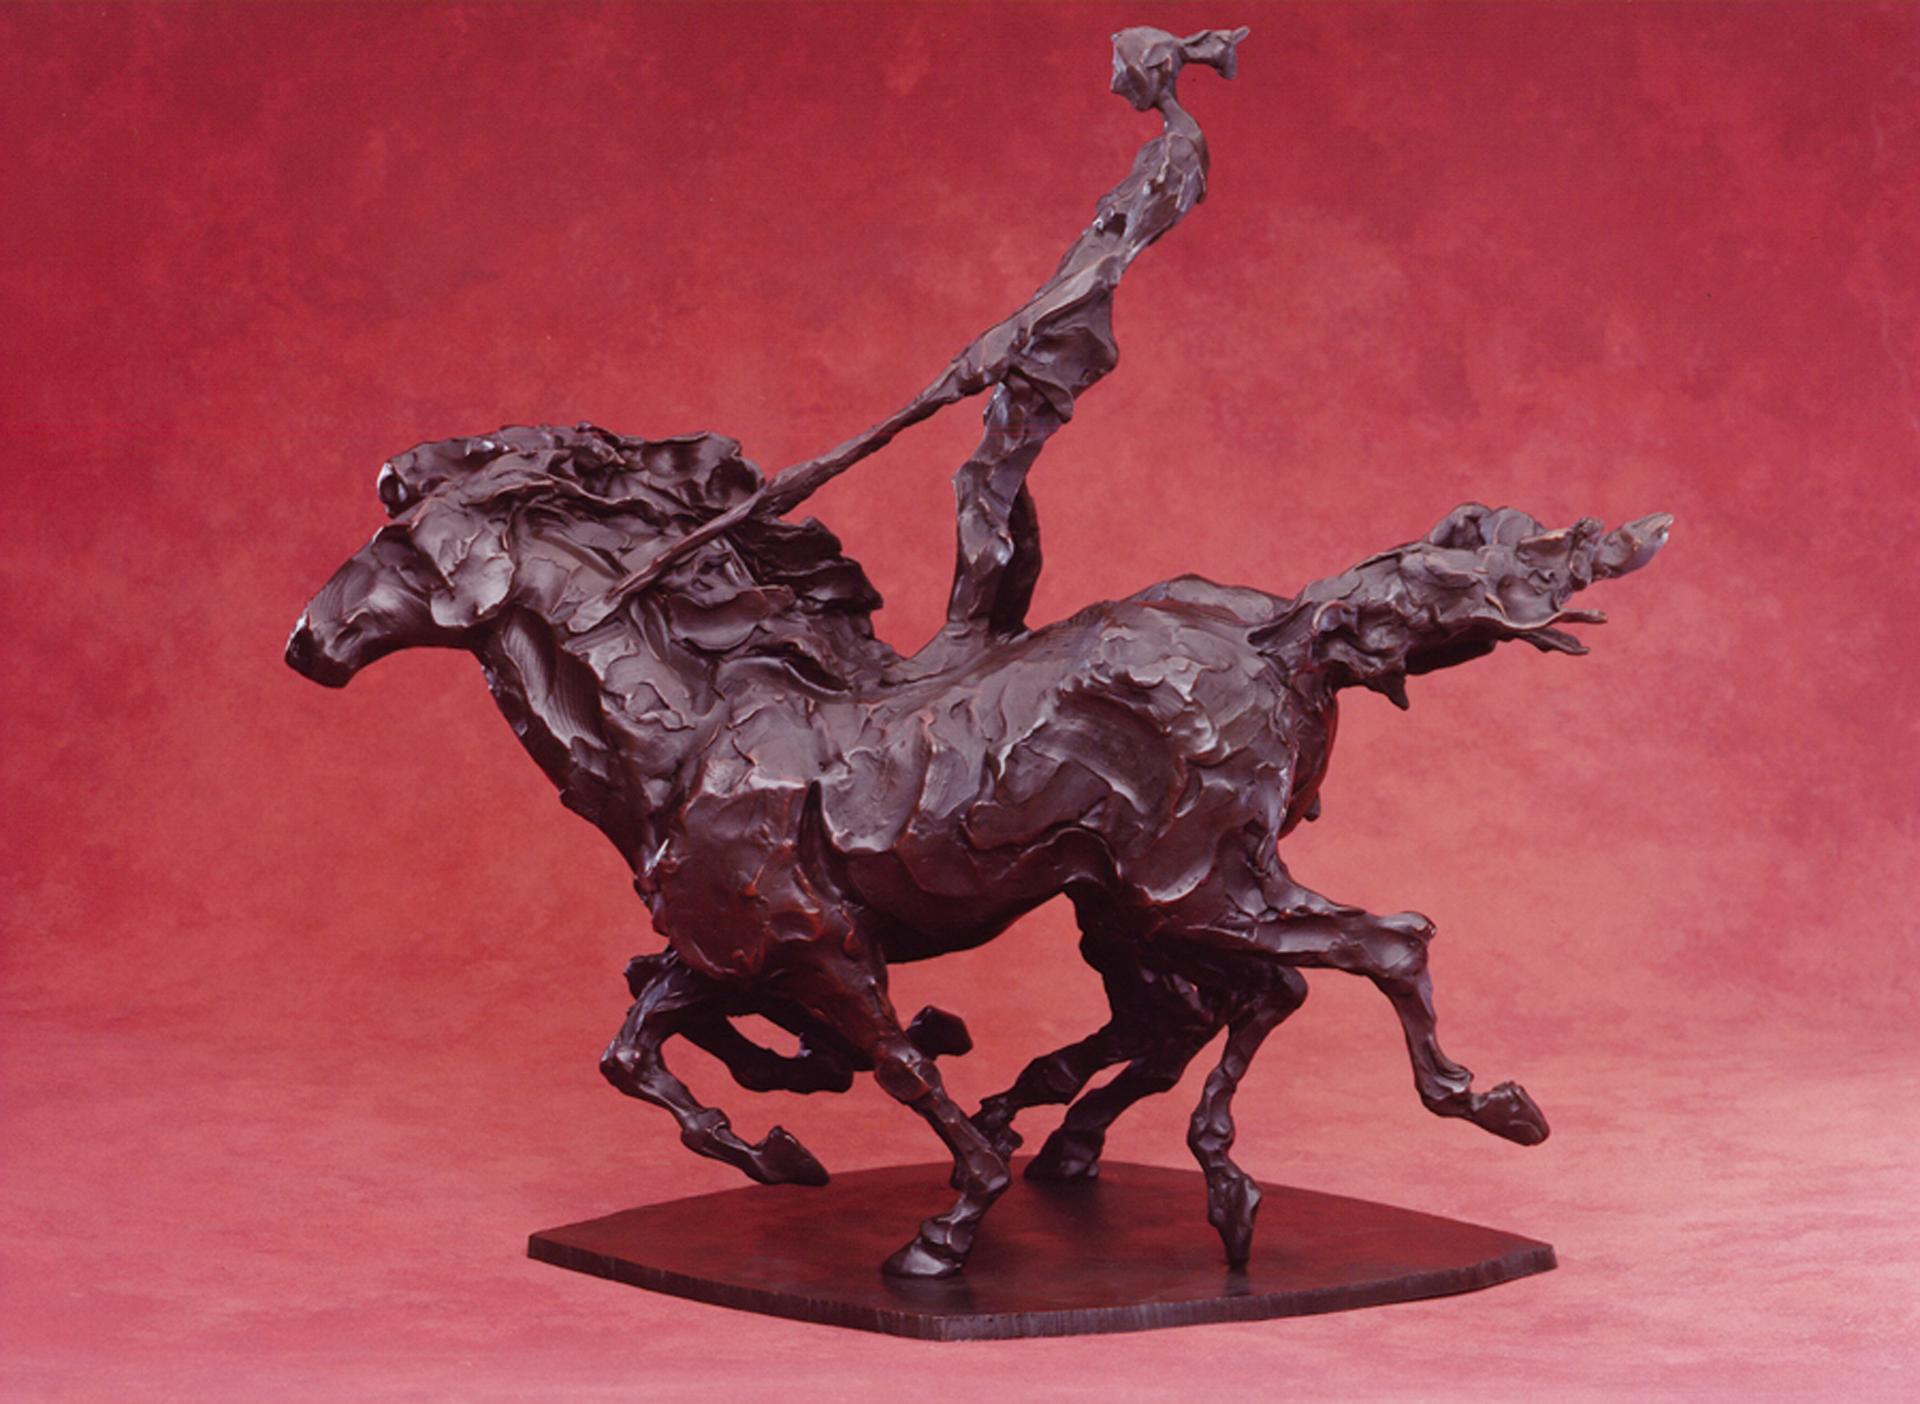 Riding Moderna - Impressionist Sculpture by Jane DeDecker